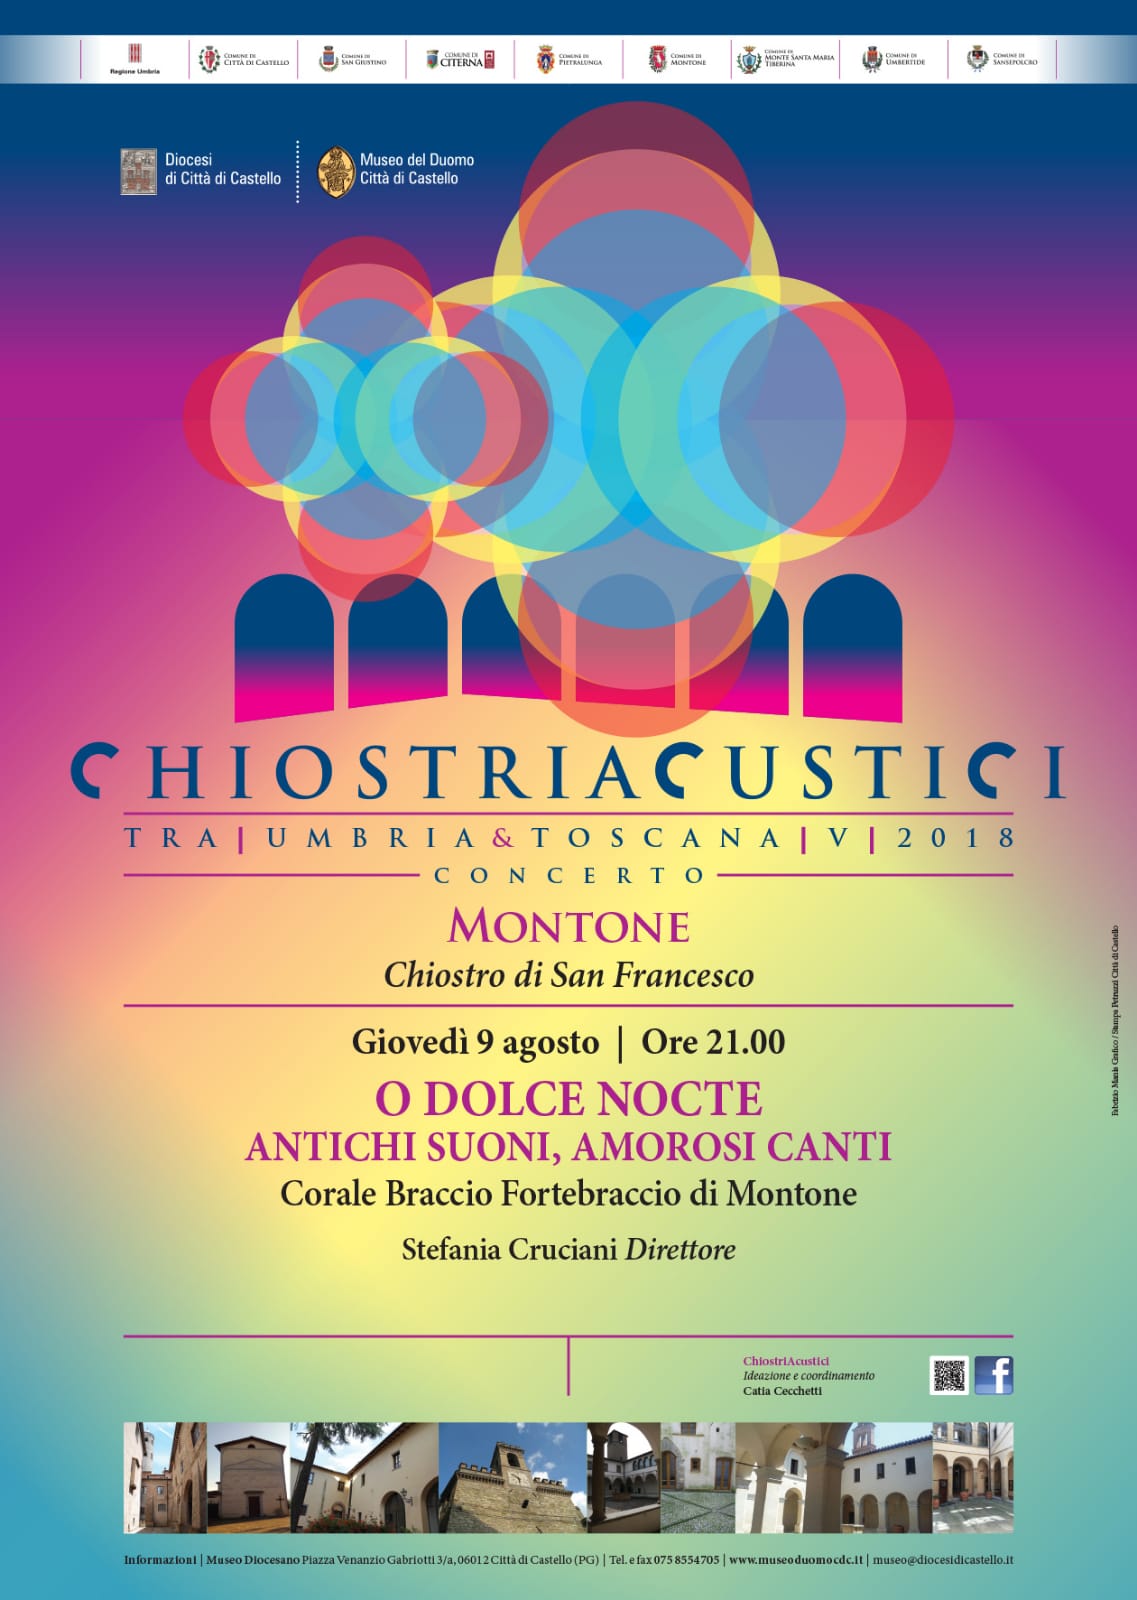 Chiostri Acustici 2018